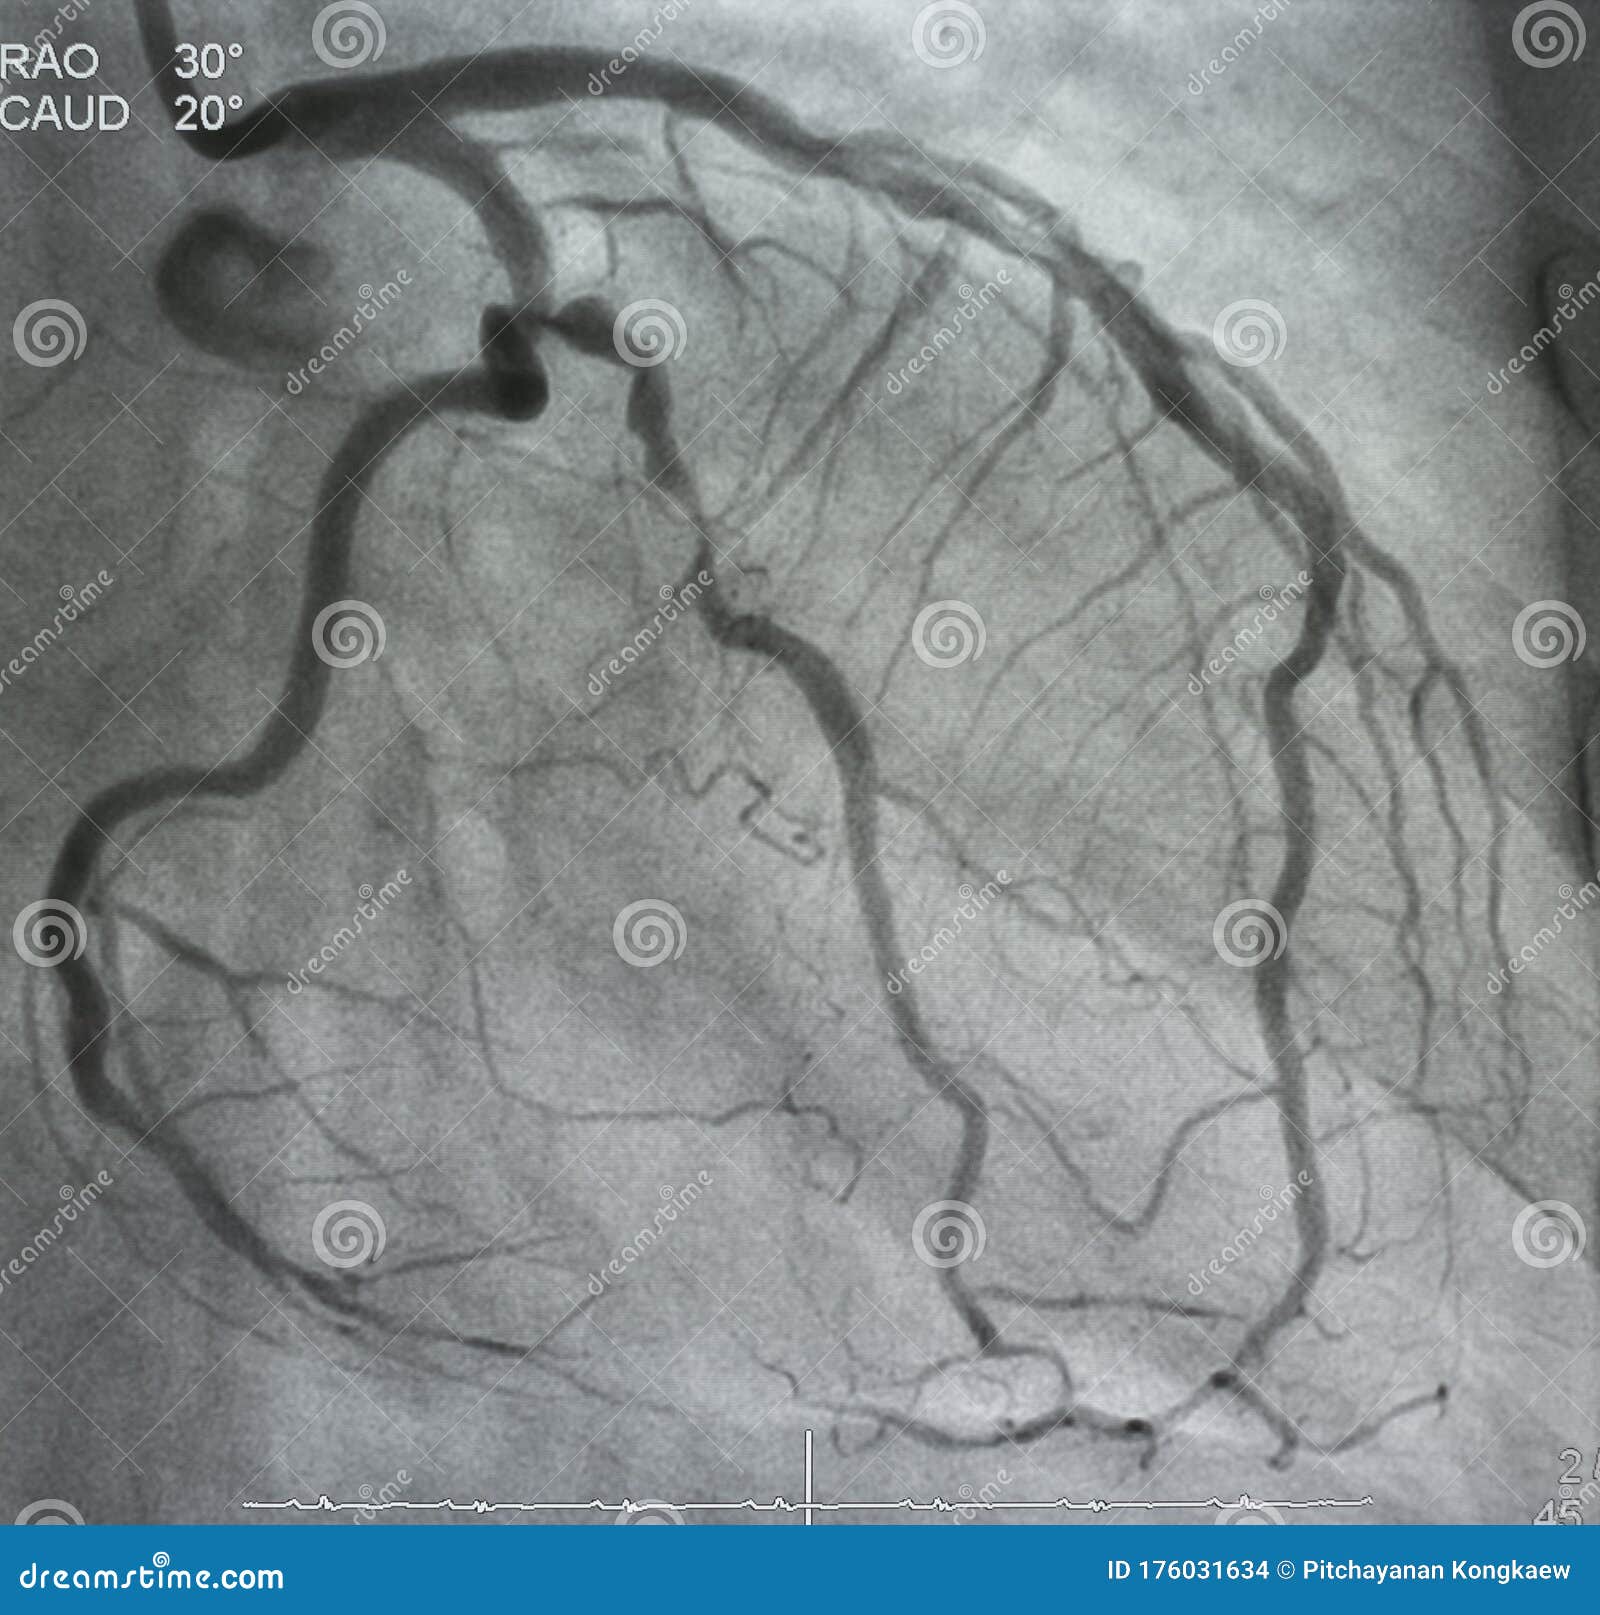 coronary angiography. x-ray image.